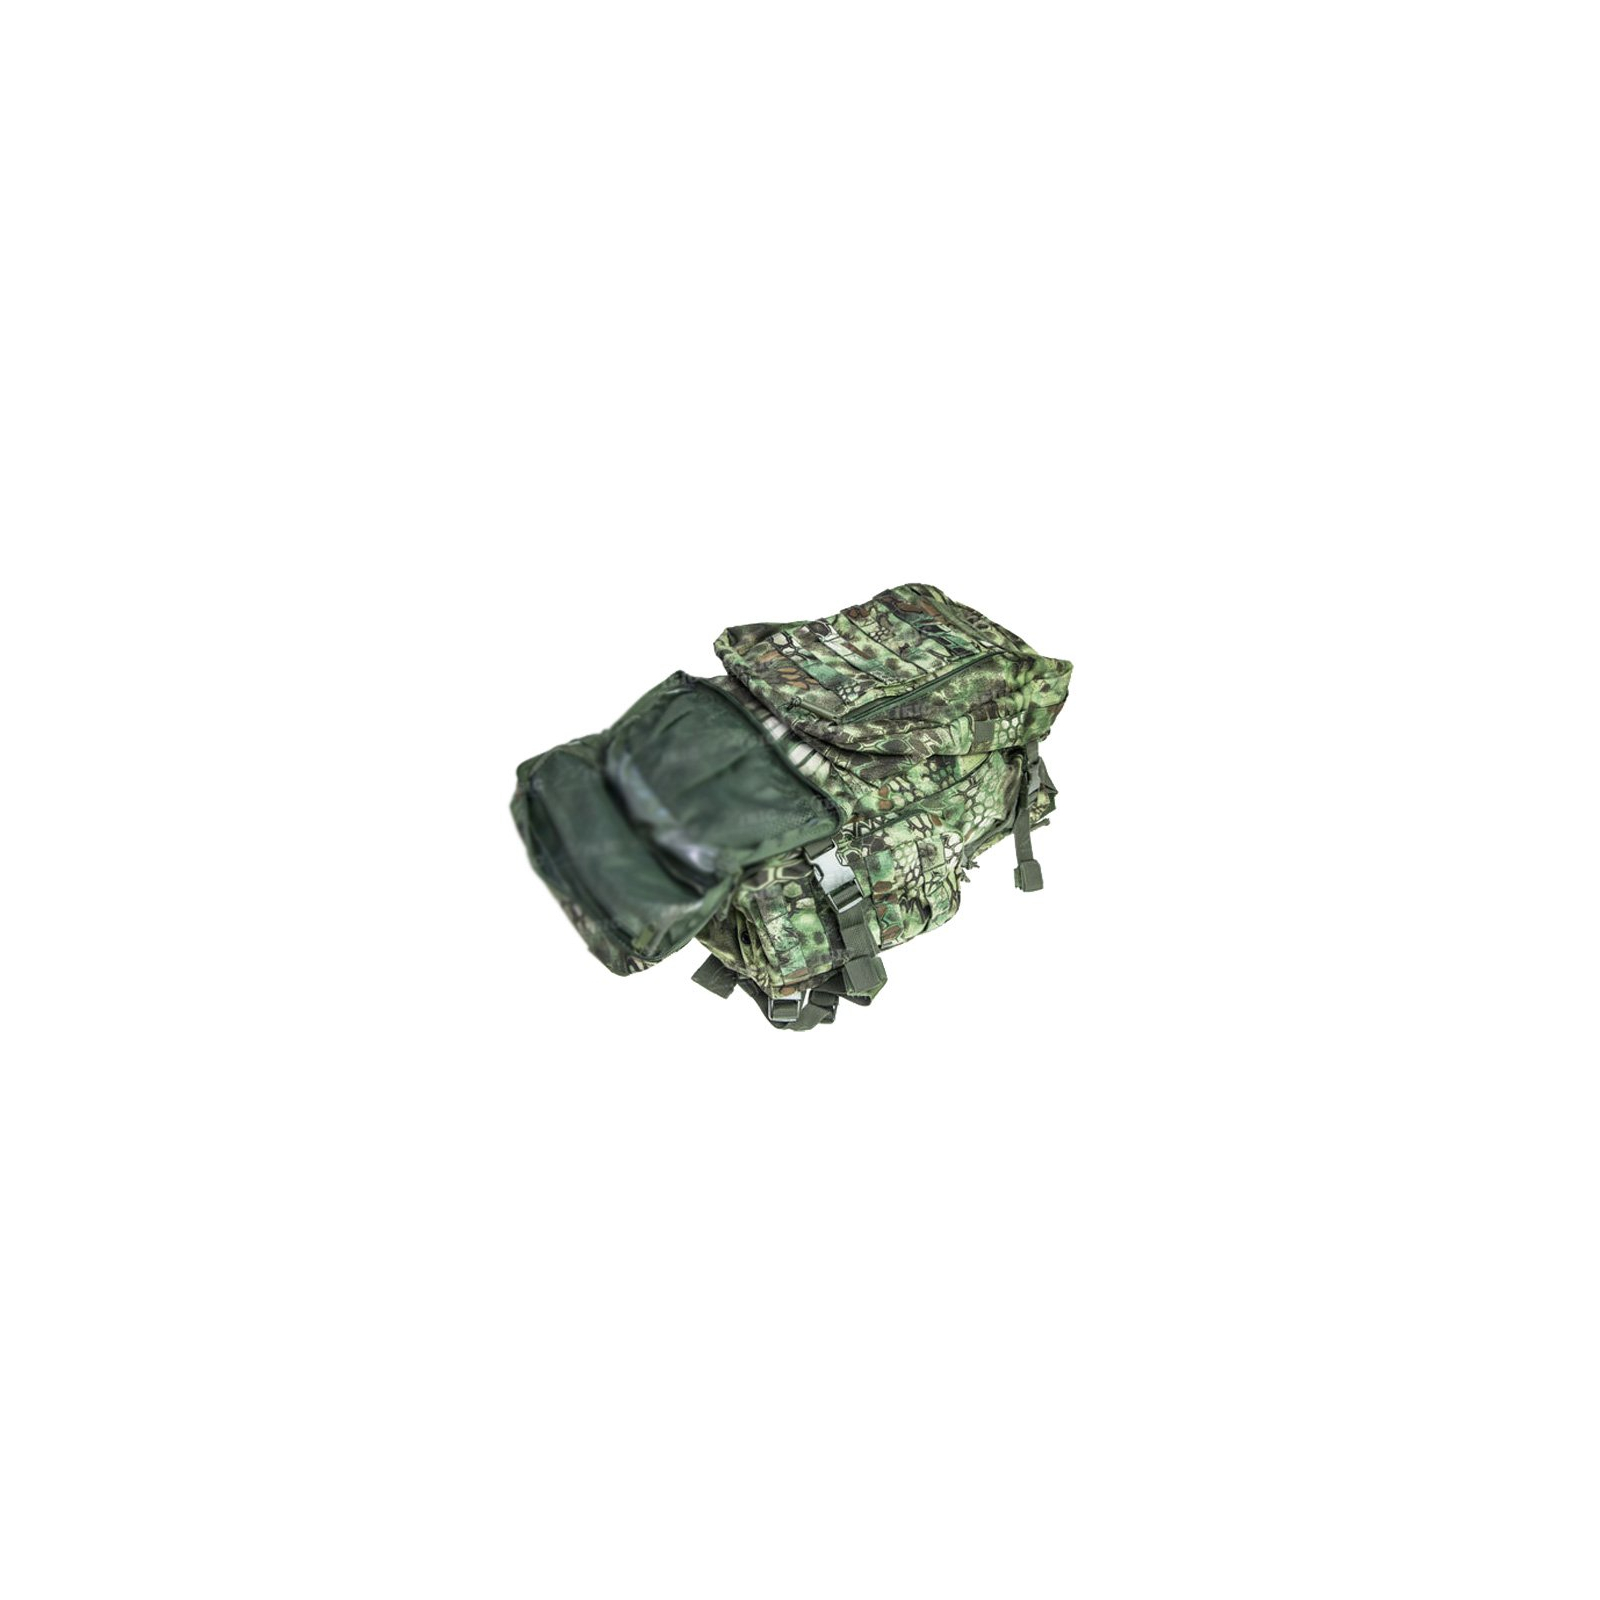 Рюкзак туристичний Skif Tac тактический 3-х дневный 45 литров kryptek green (2795.02.55) зображення 4